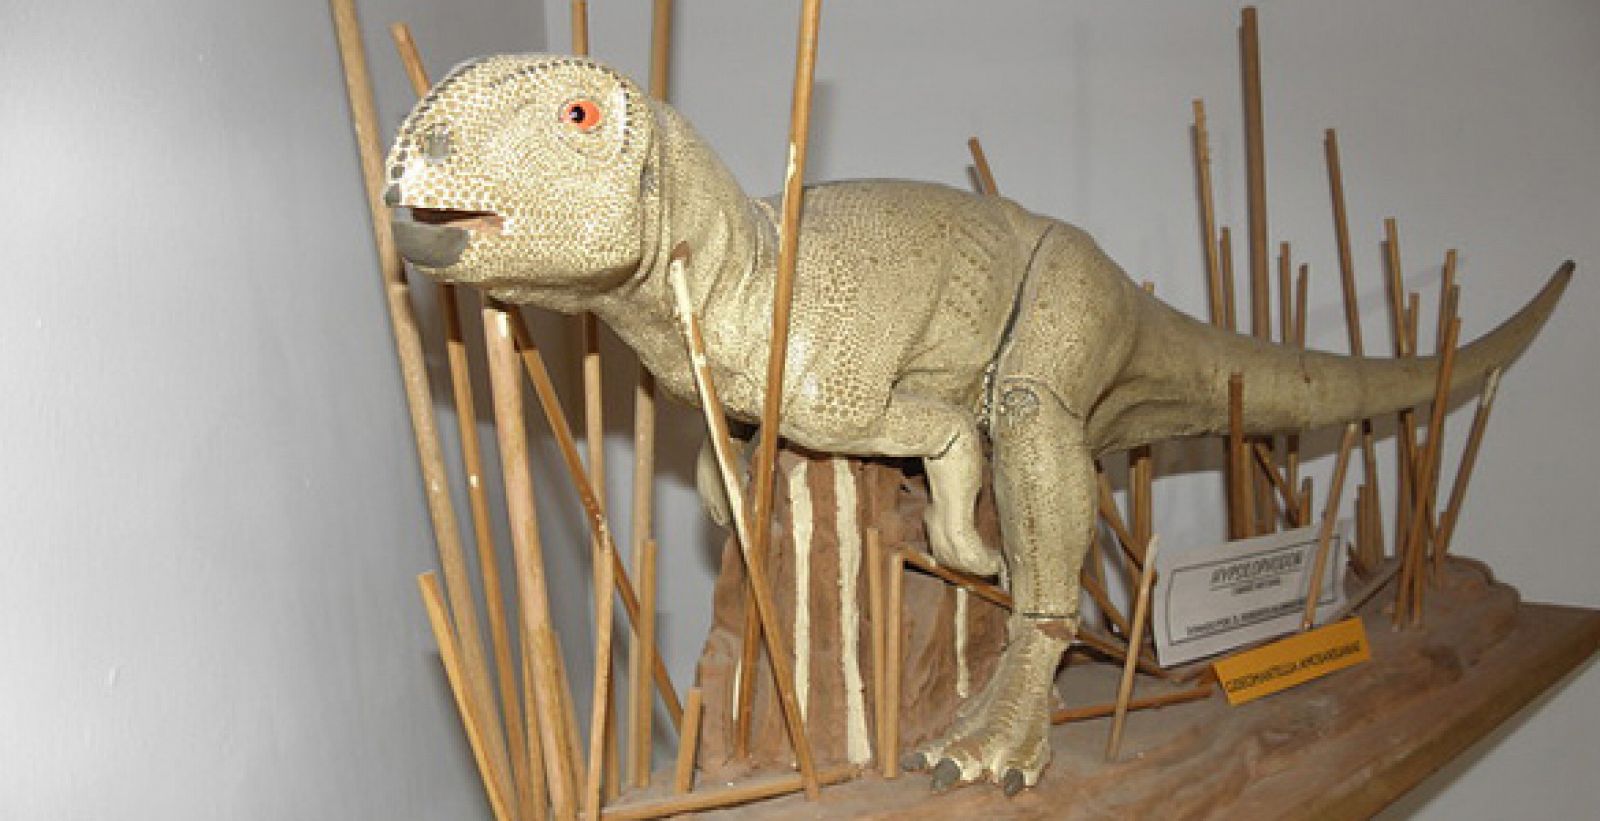 Reconstrucción del dinosaurio hallado en el yacimiento paleontológico de Galve (Teruel) y que vivió hace 130 millones de años